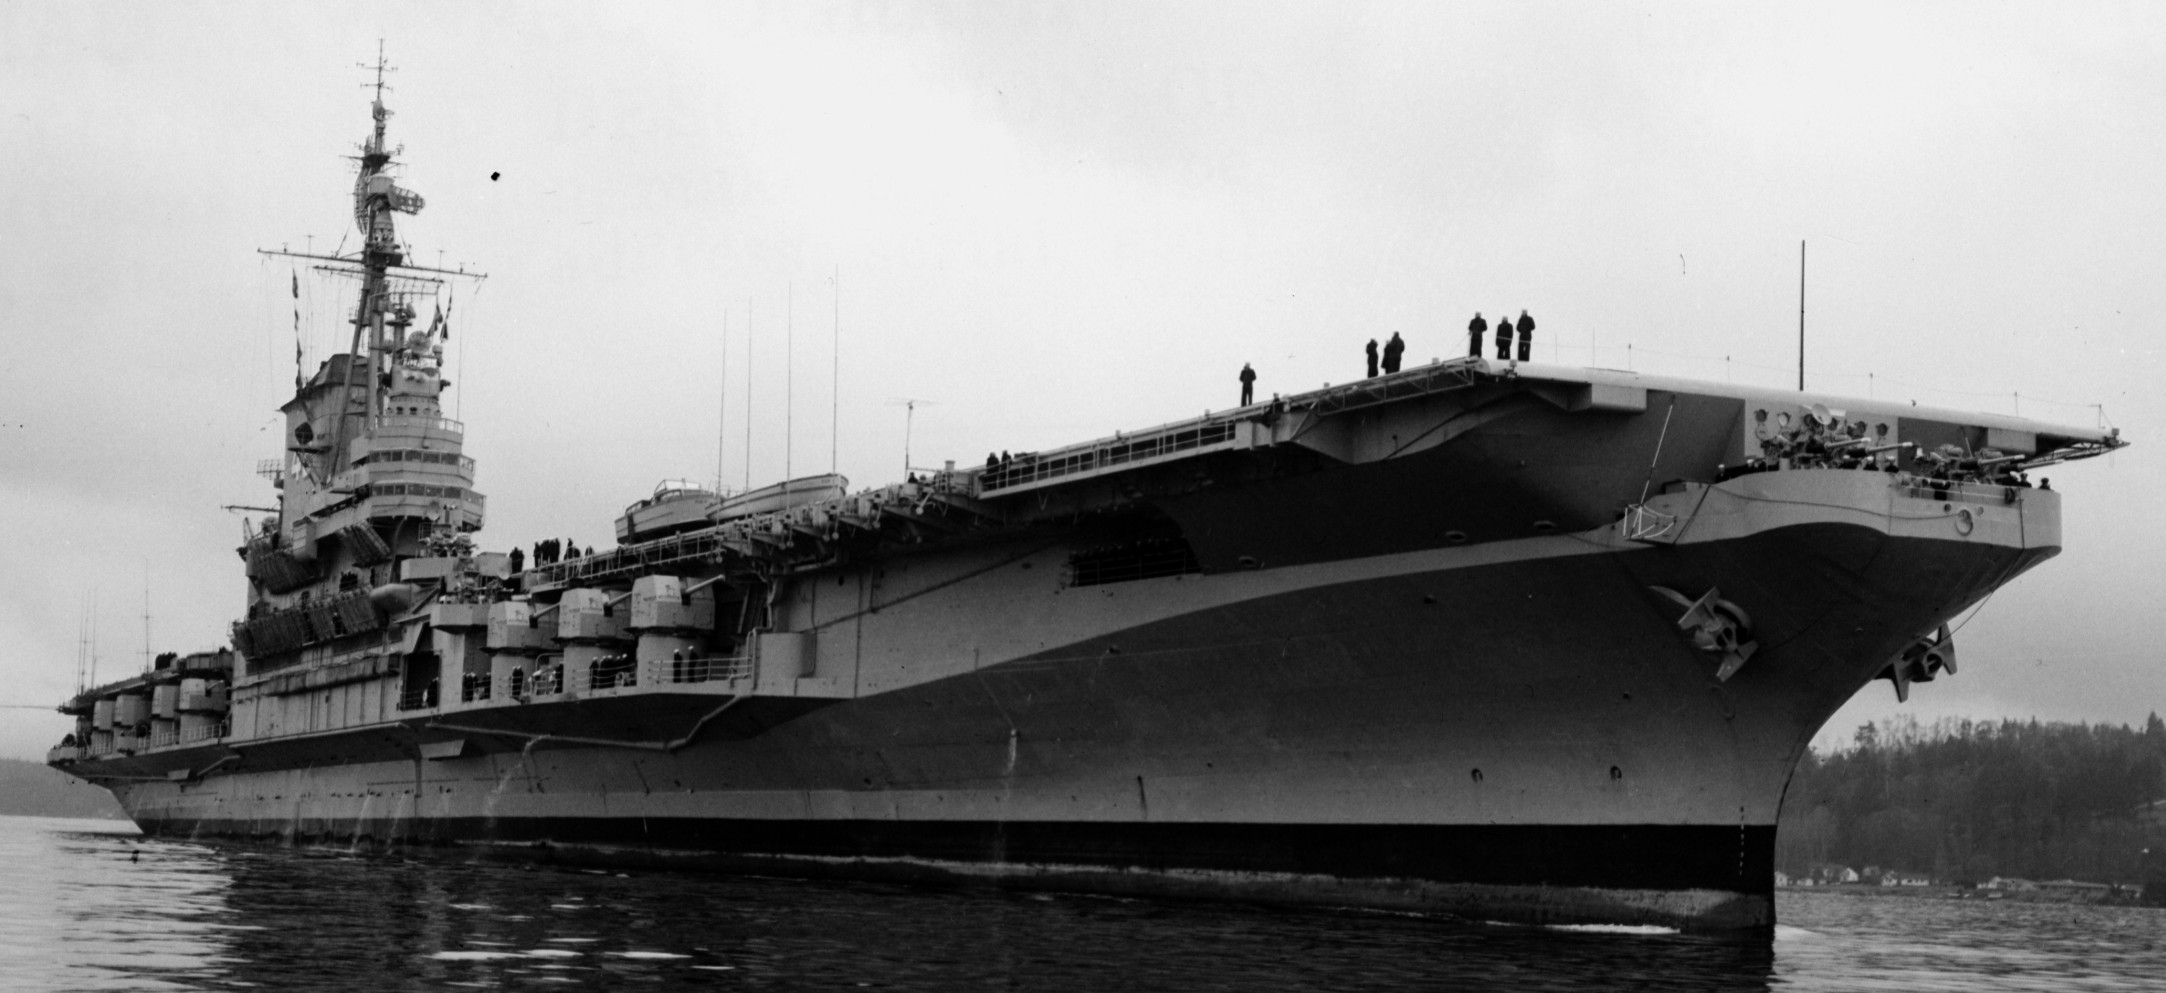 cva-42 uss franklin d. roosevelt midway class aircraft carrier 66 puget sound naval shipyard